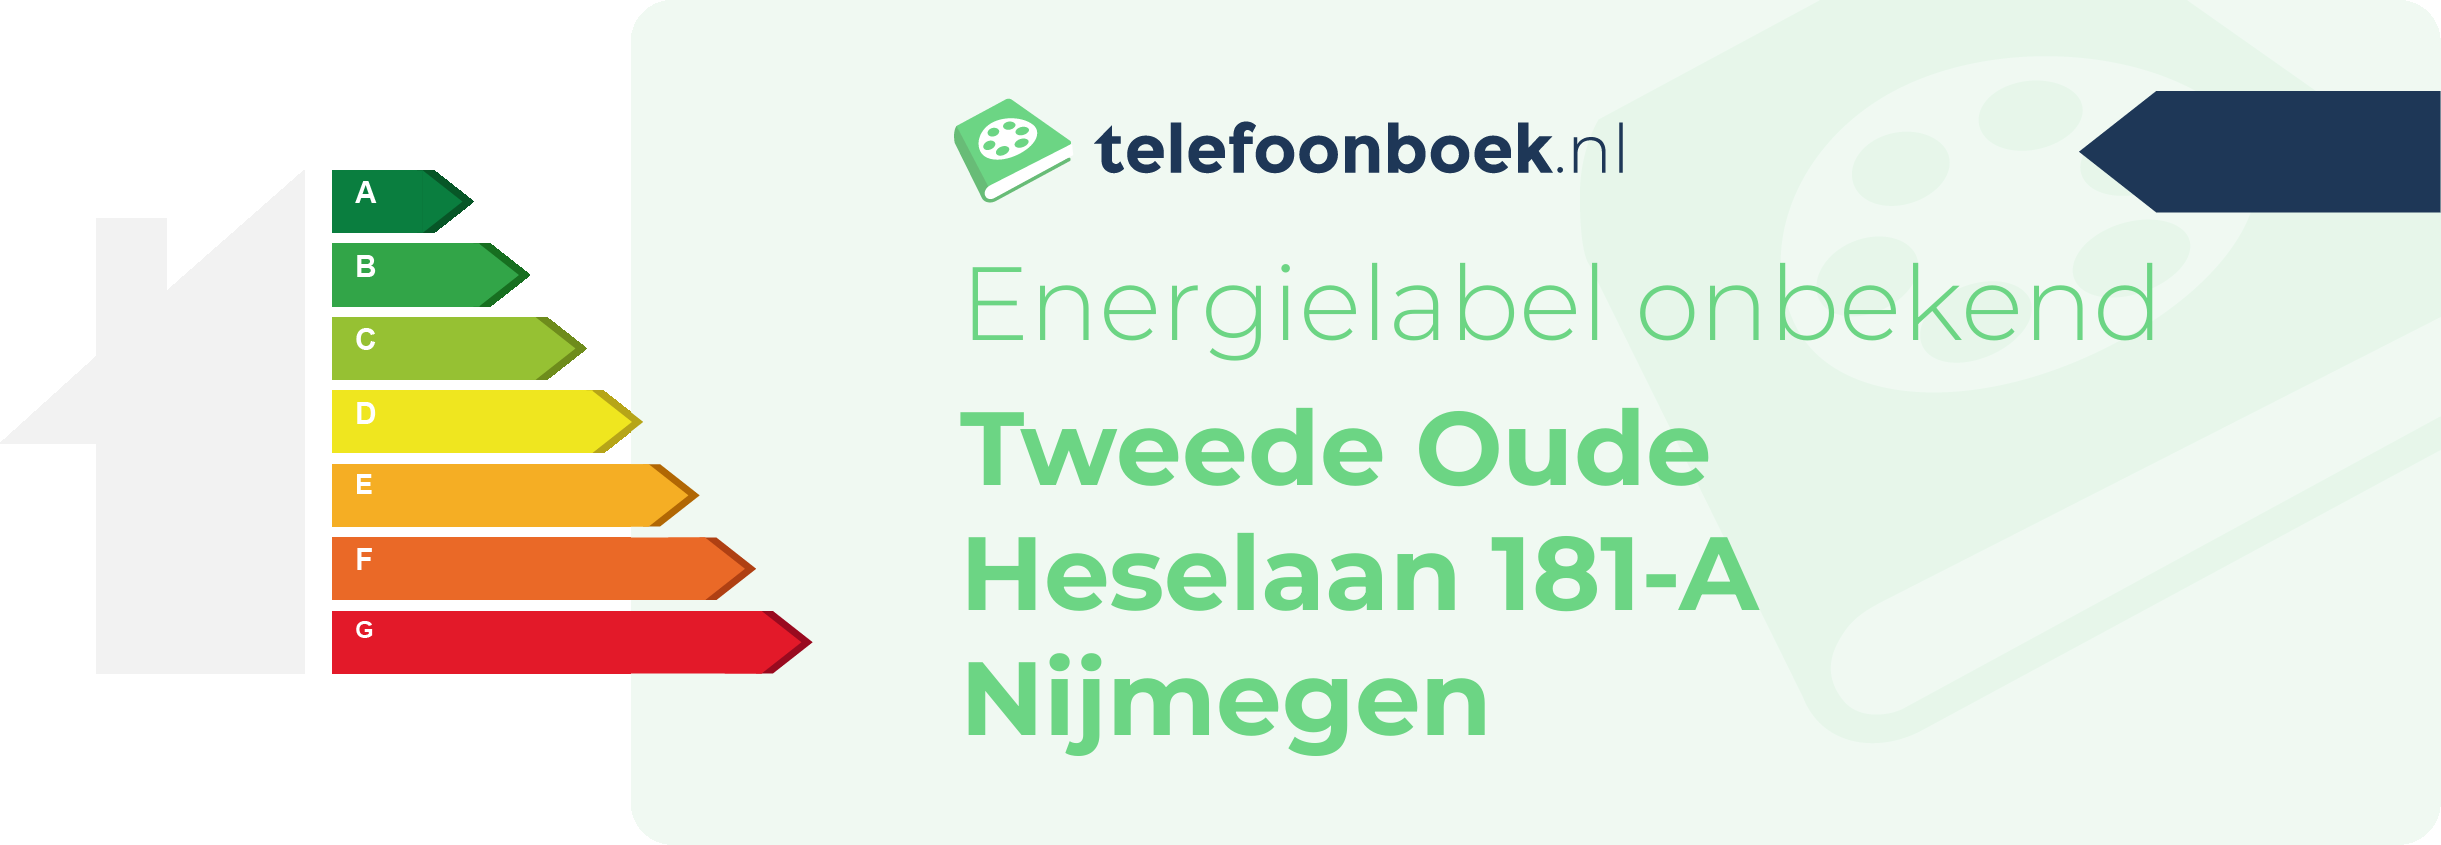 Energielabel Tweede Oude Heselaan 181-A Nijmegen